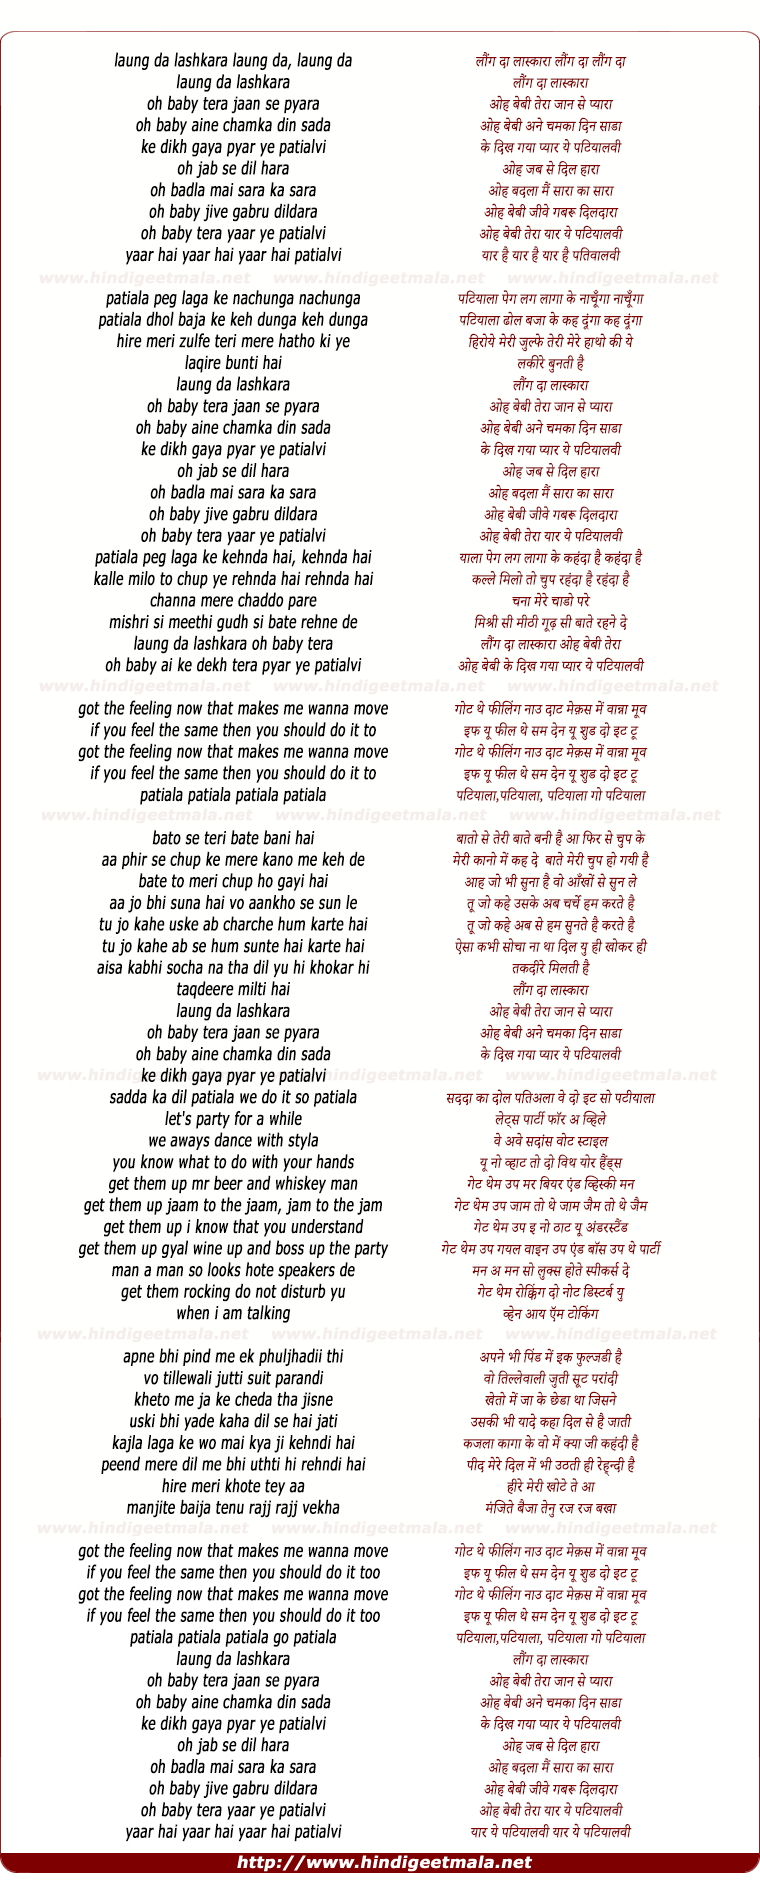 lyrics of song Laung Da Lashkara (Remix)